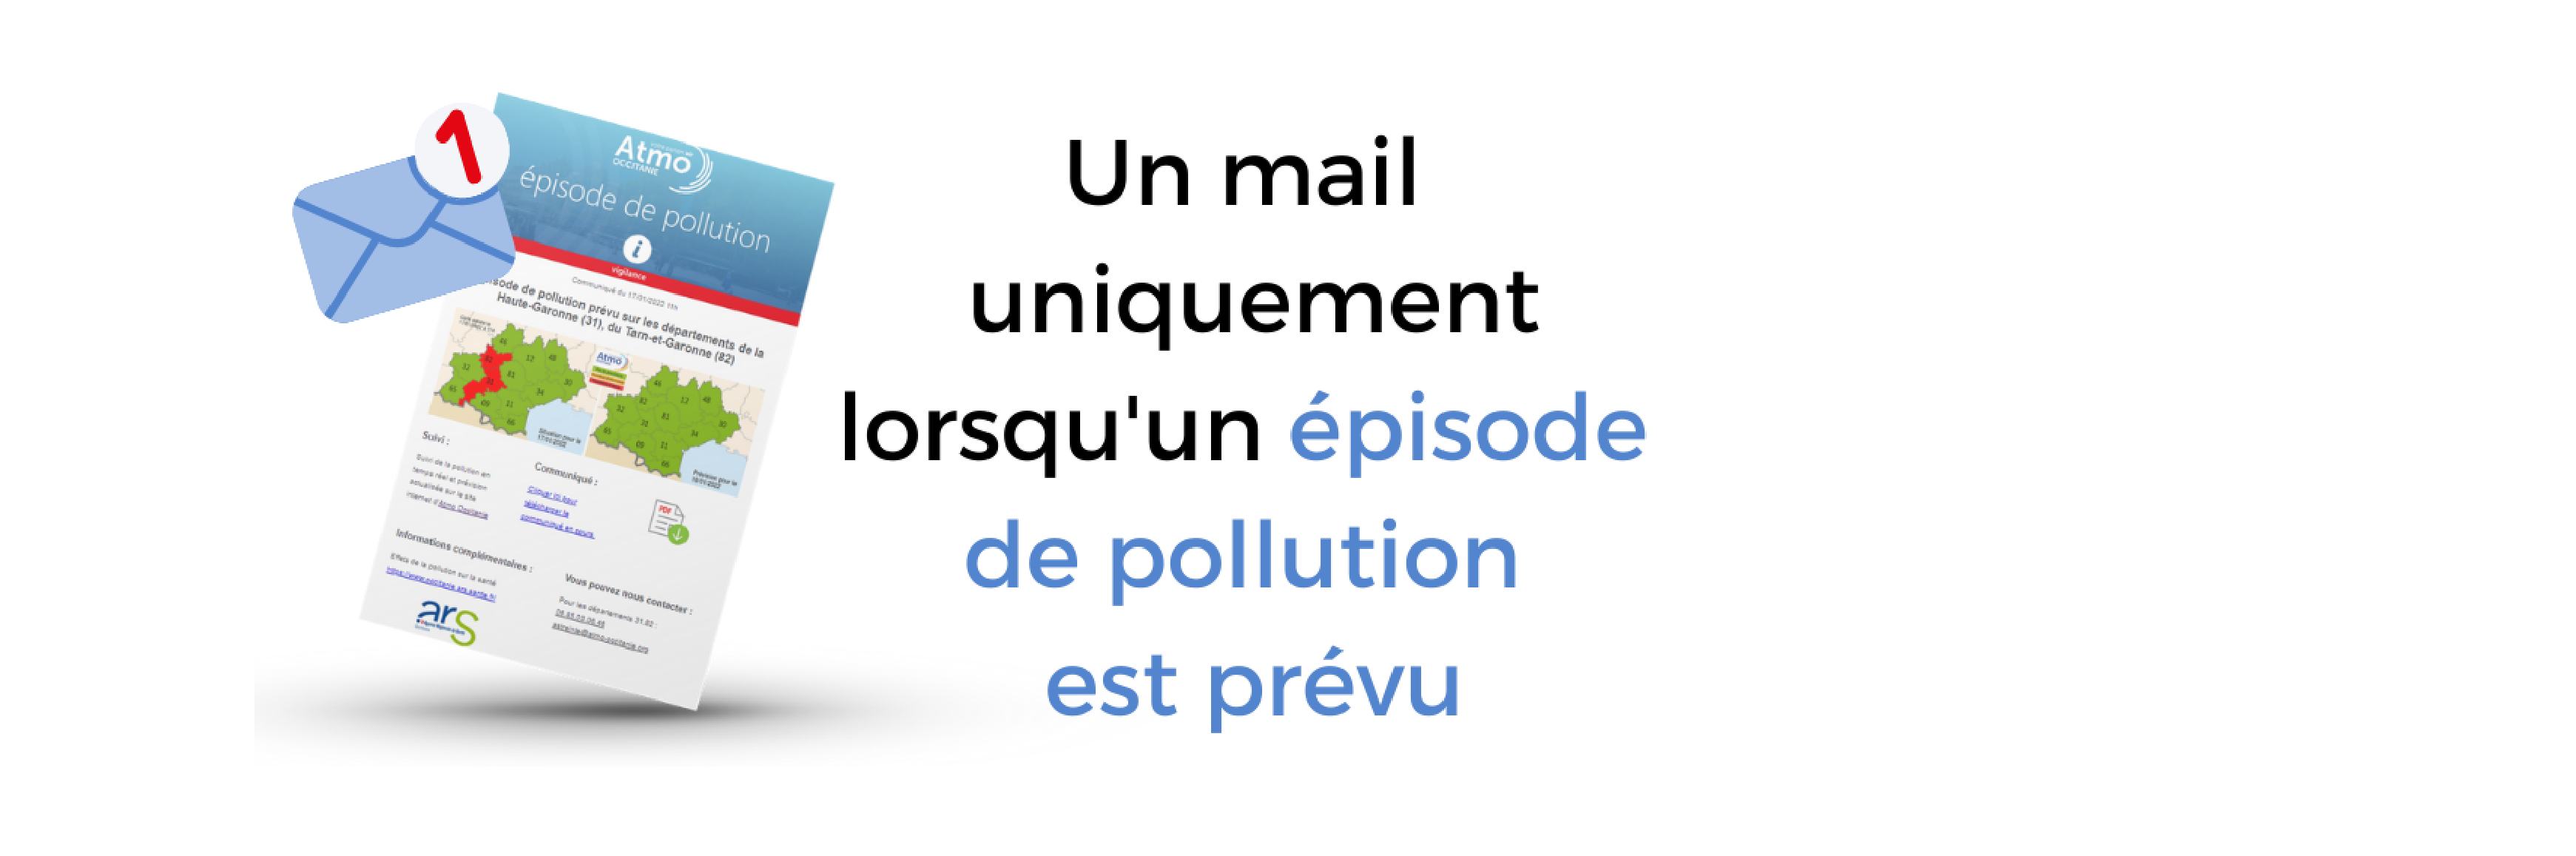 un mail épisode de pollution